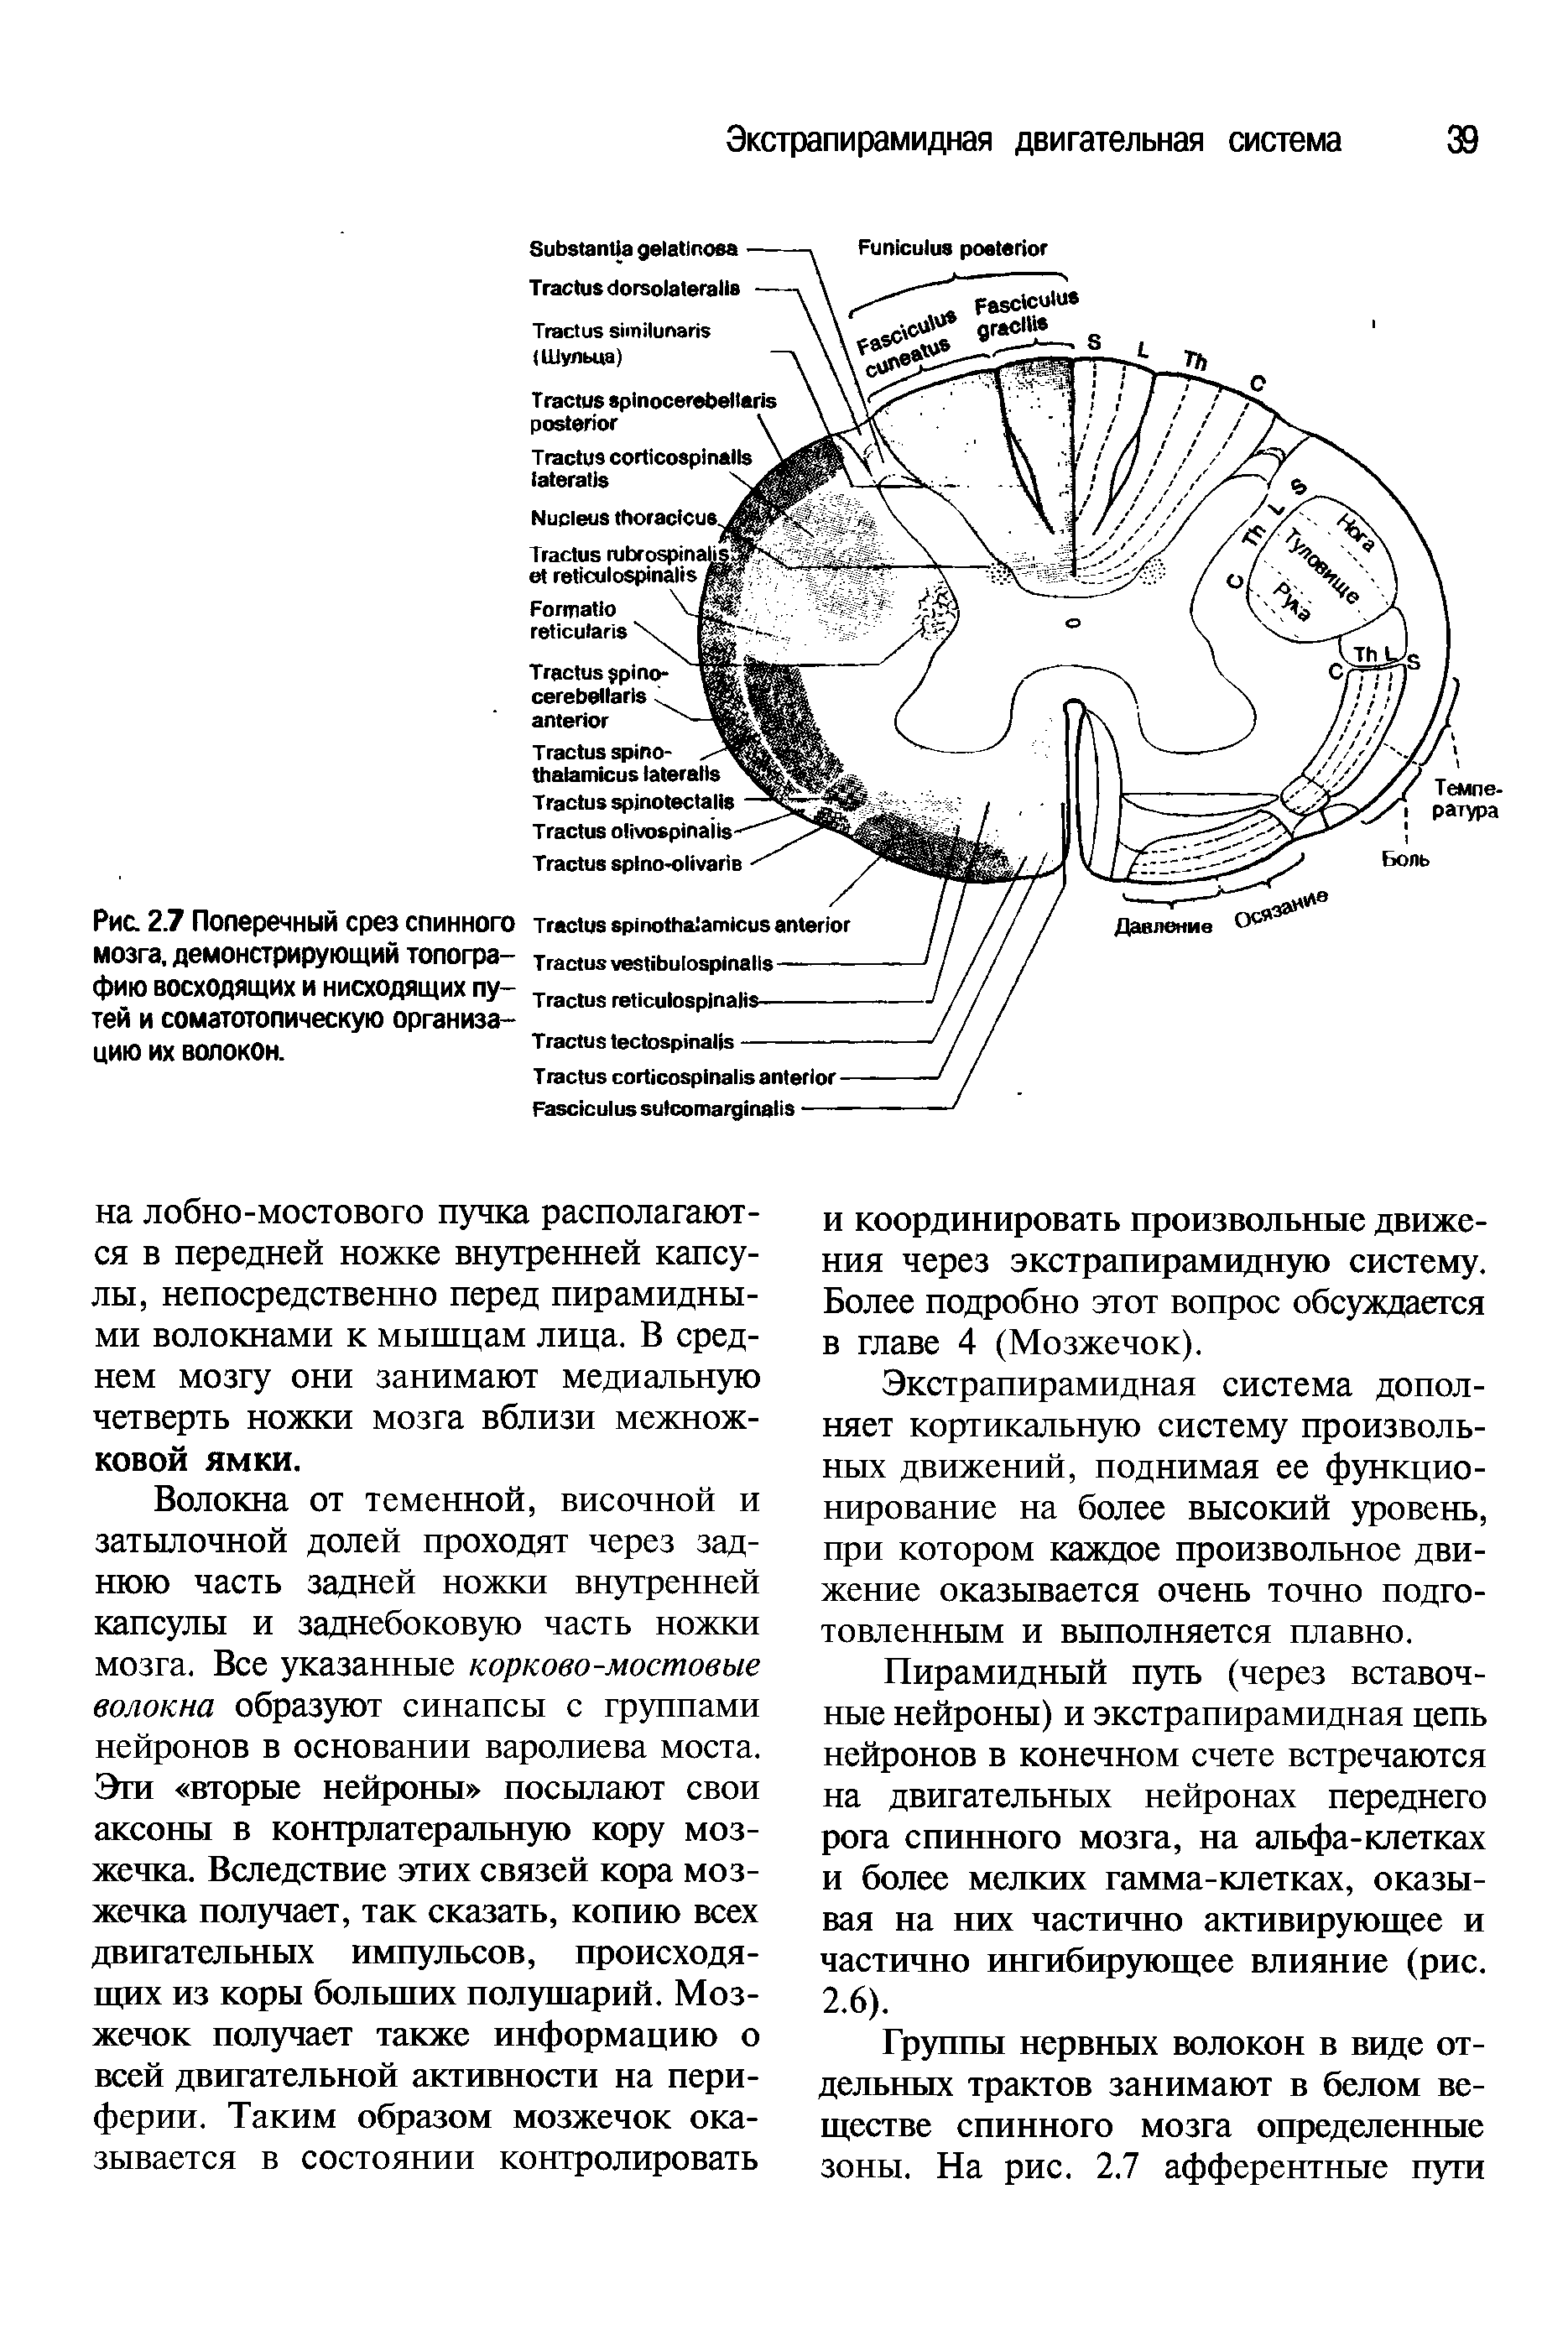 Рис. 27 Поперечный срез спинного мозга, демонстрирующий топографию восходящих и нисходящих путей и соматотопическую организацию их волокон.